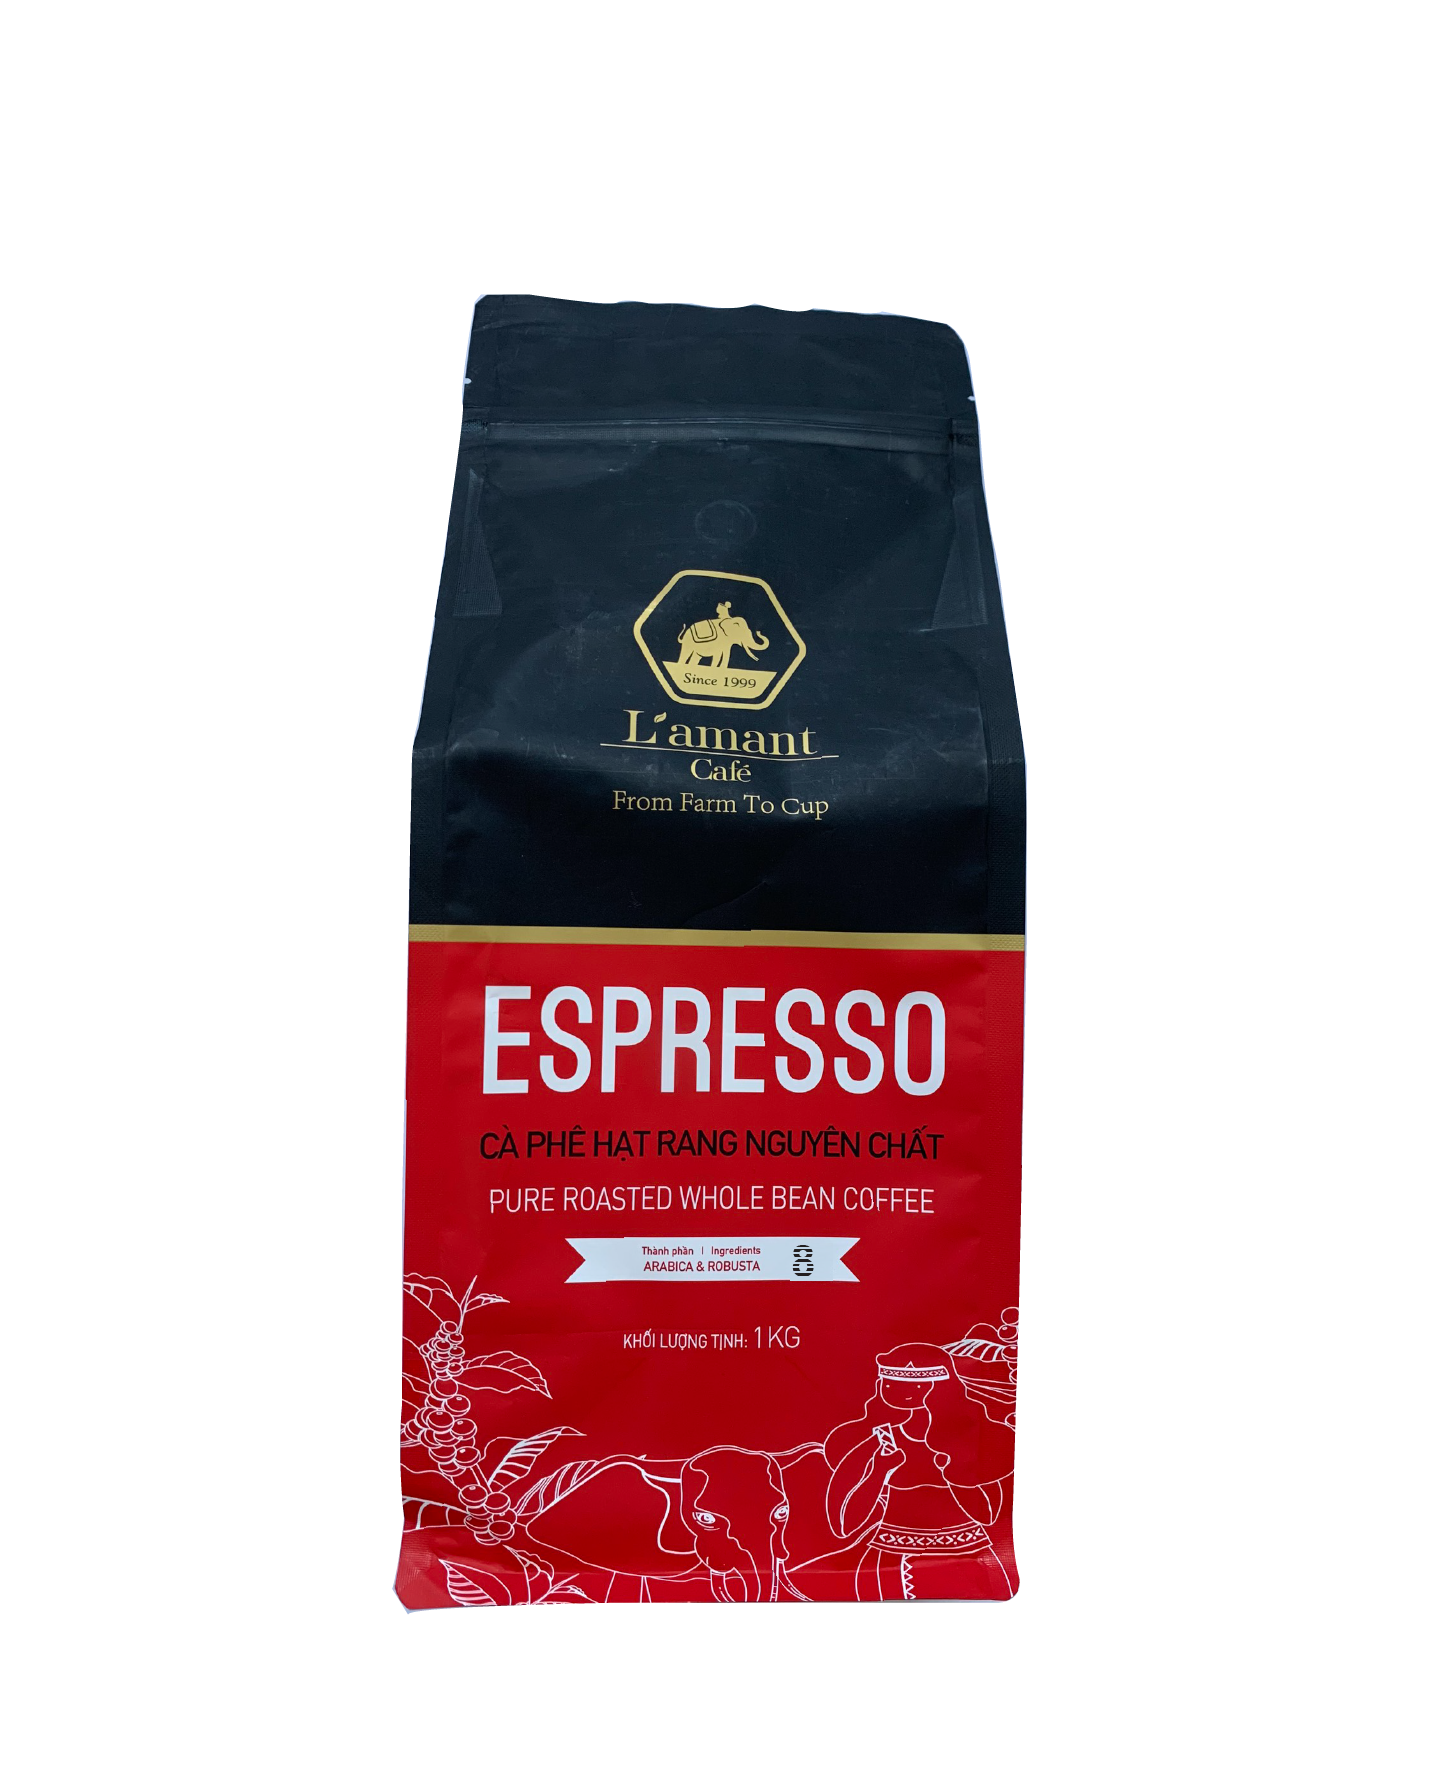  Cà phê hạt rang L’amant Espresso số 08 - L’amant No.08 Espresso Roasted Coffee 